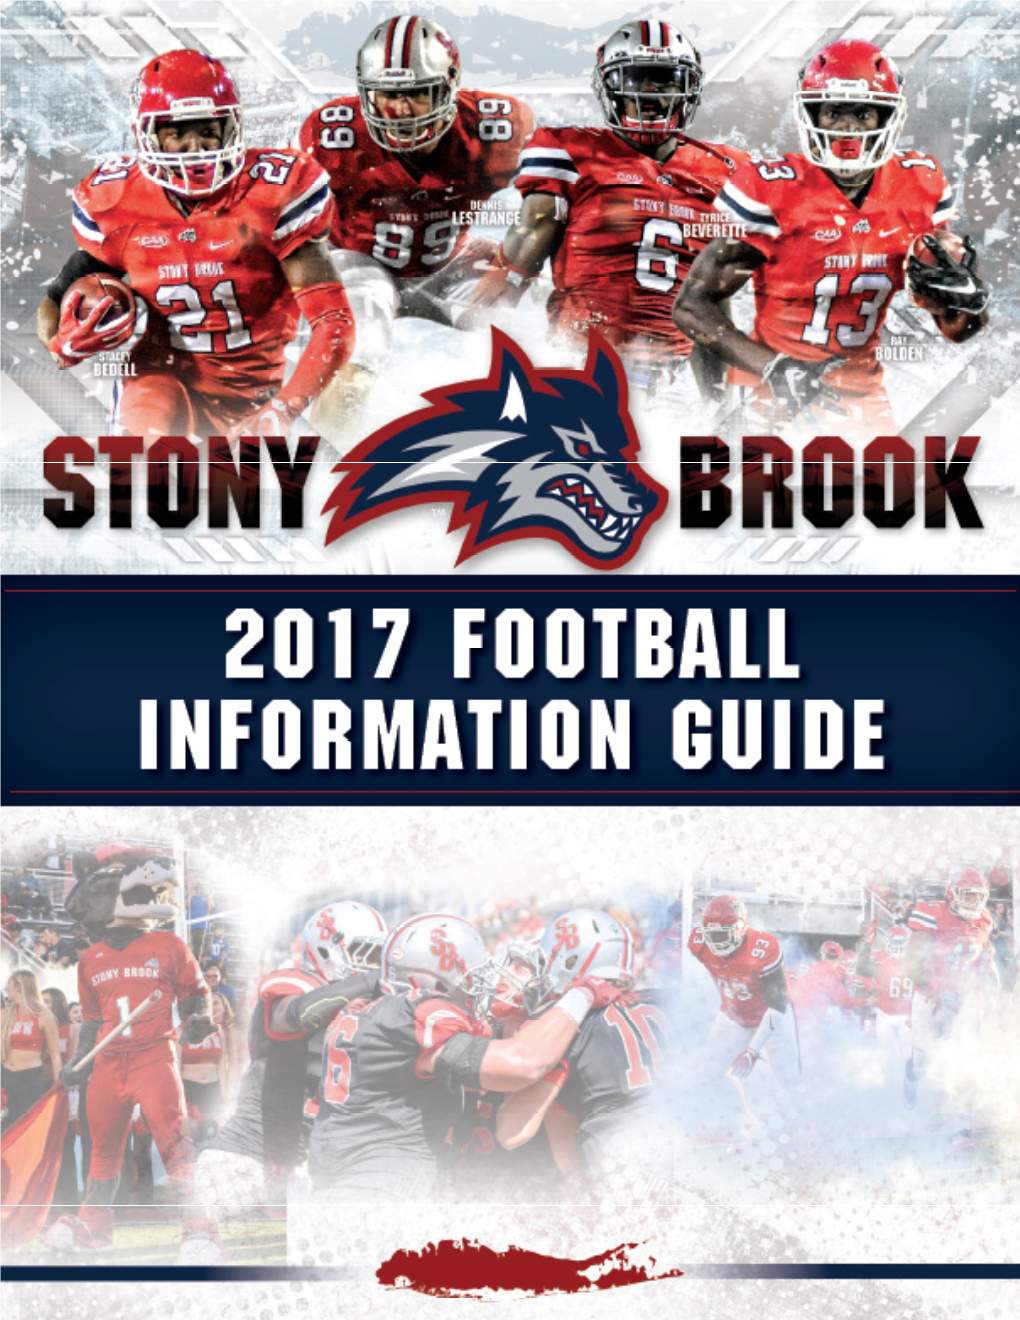 2017 Stony Brook Football Informational Guide 1 2 2017 Stony Brook Football Informational Guide Quick Facts